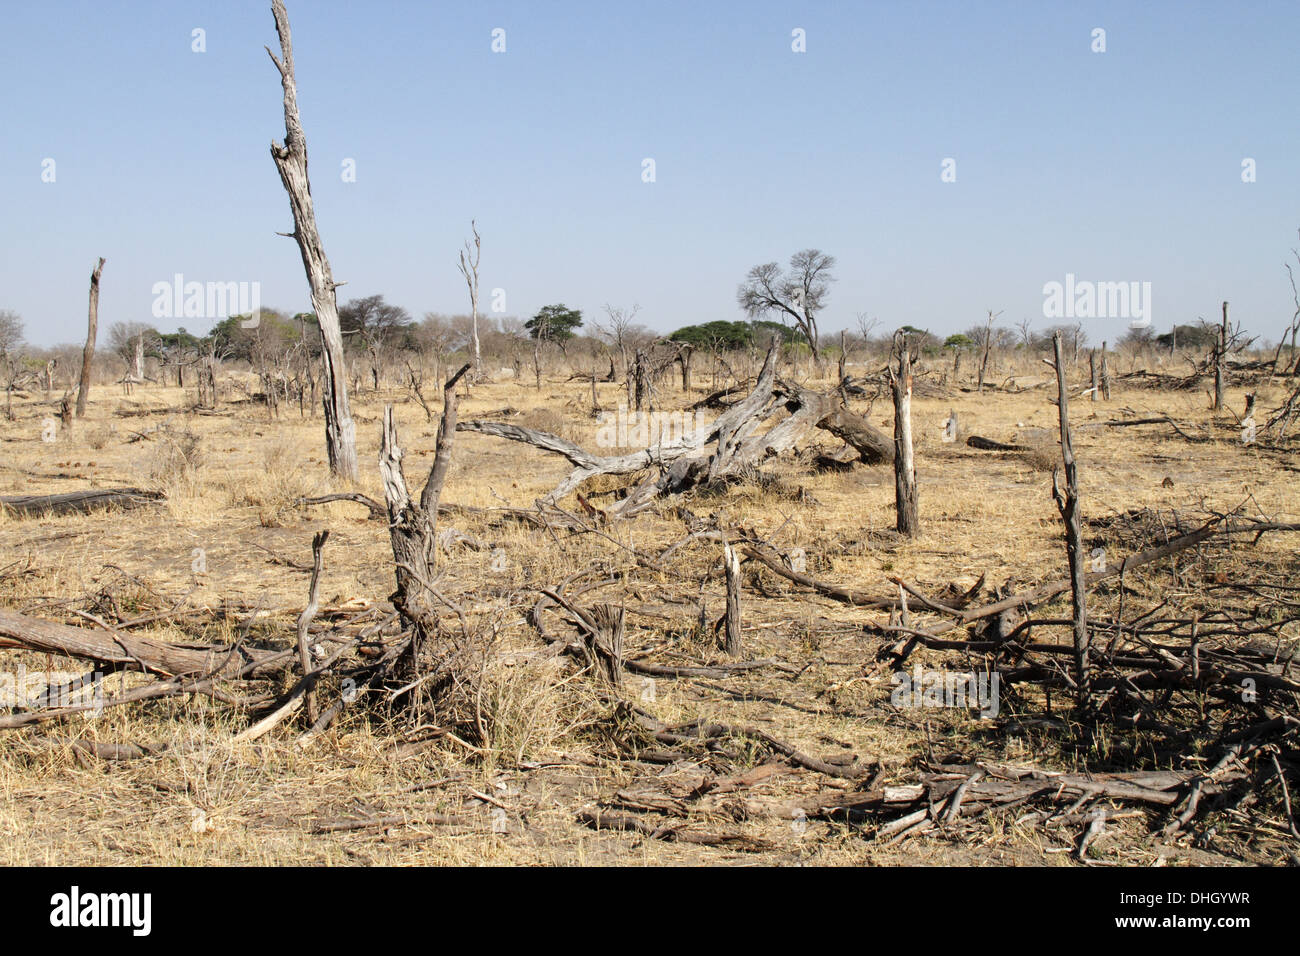 Les dommages aux arbres causés par les éléphants en Afrique Banque D'Images